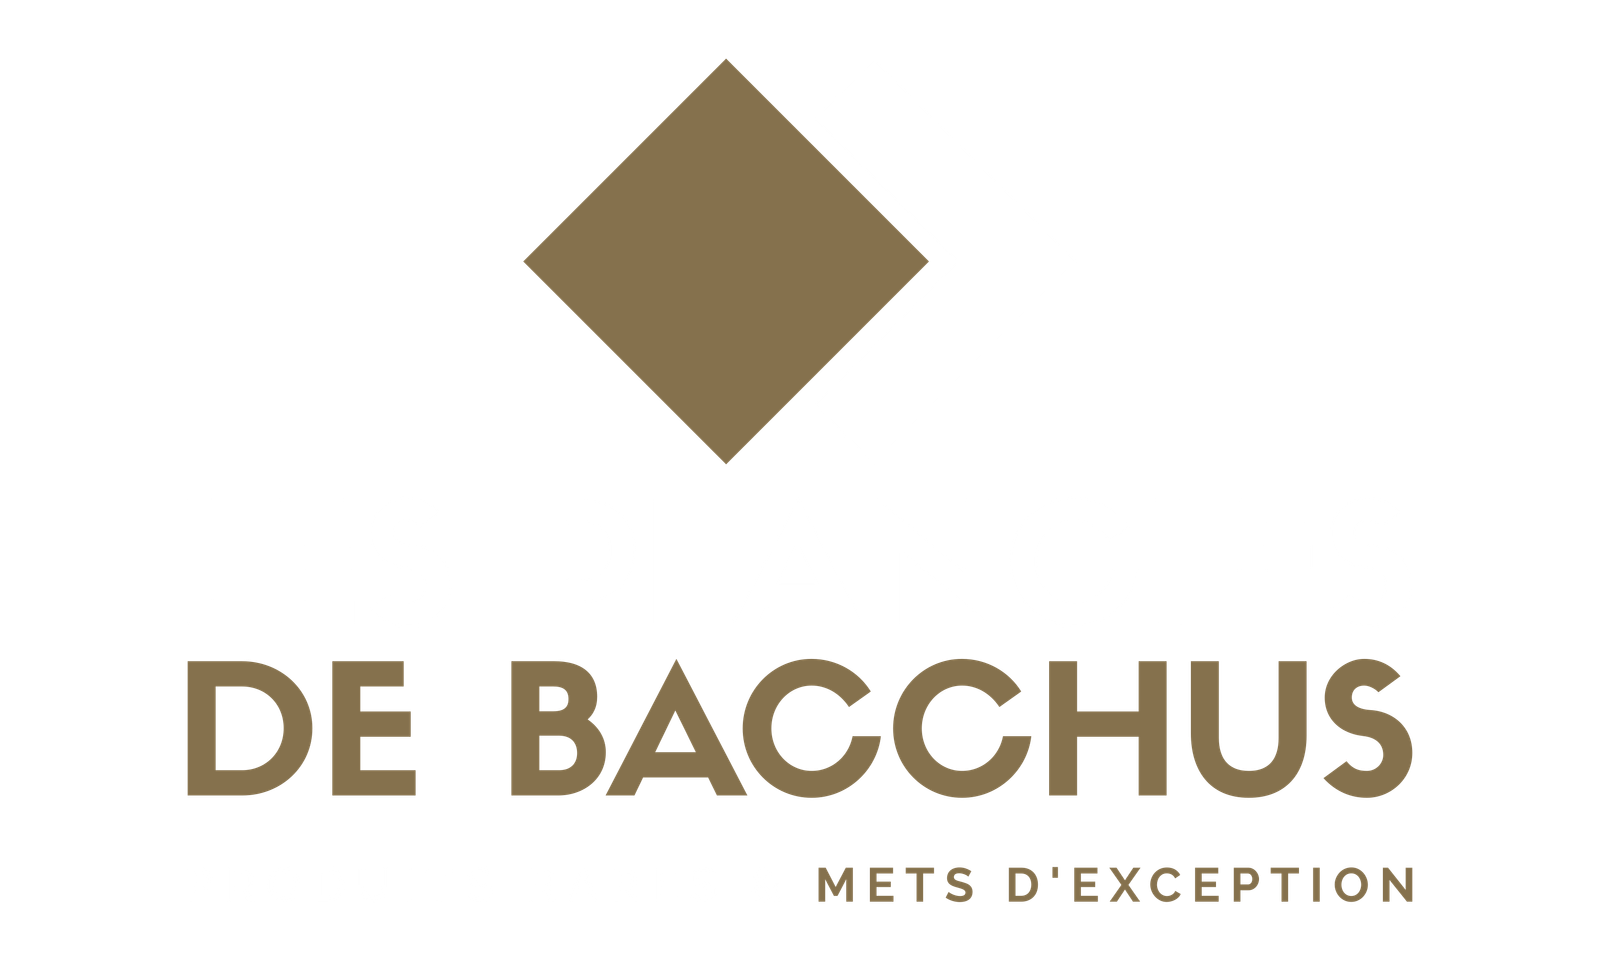 Les Planches de Bacchus